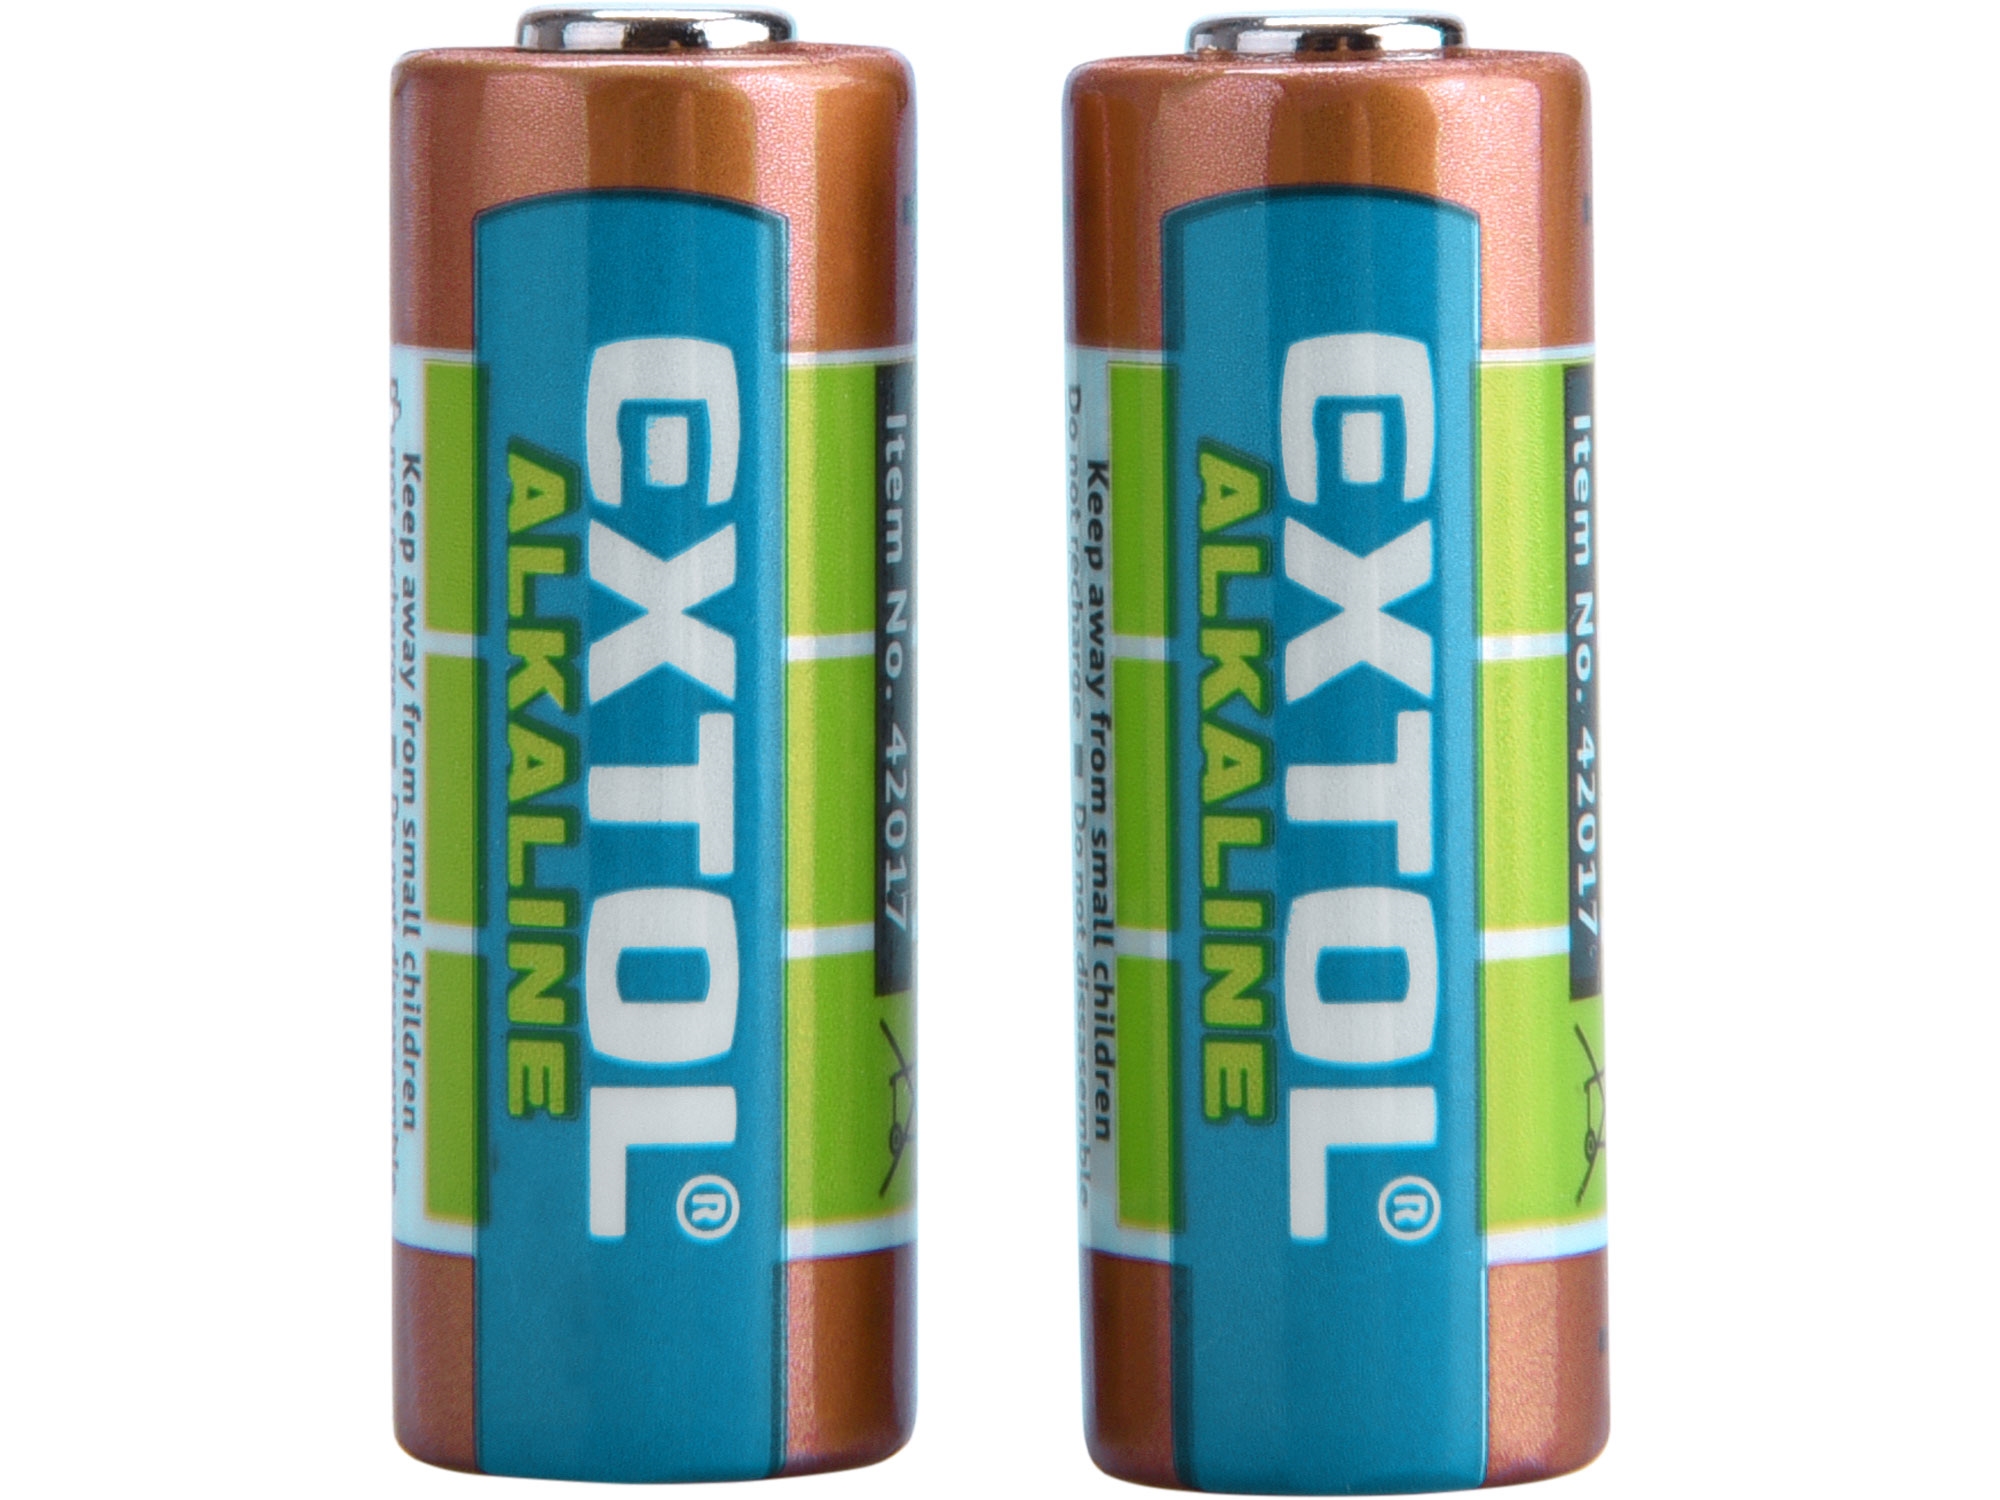 baterie alkalické, 2ks, 12V (23A)